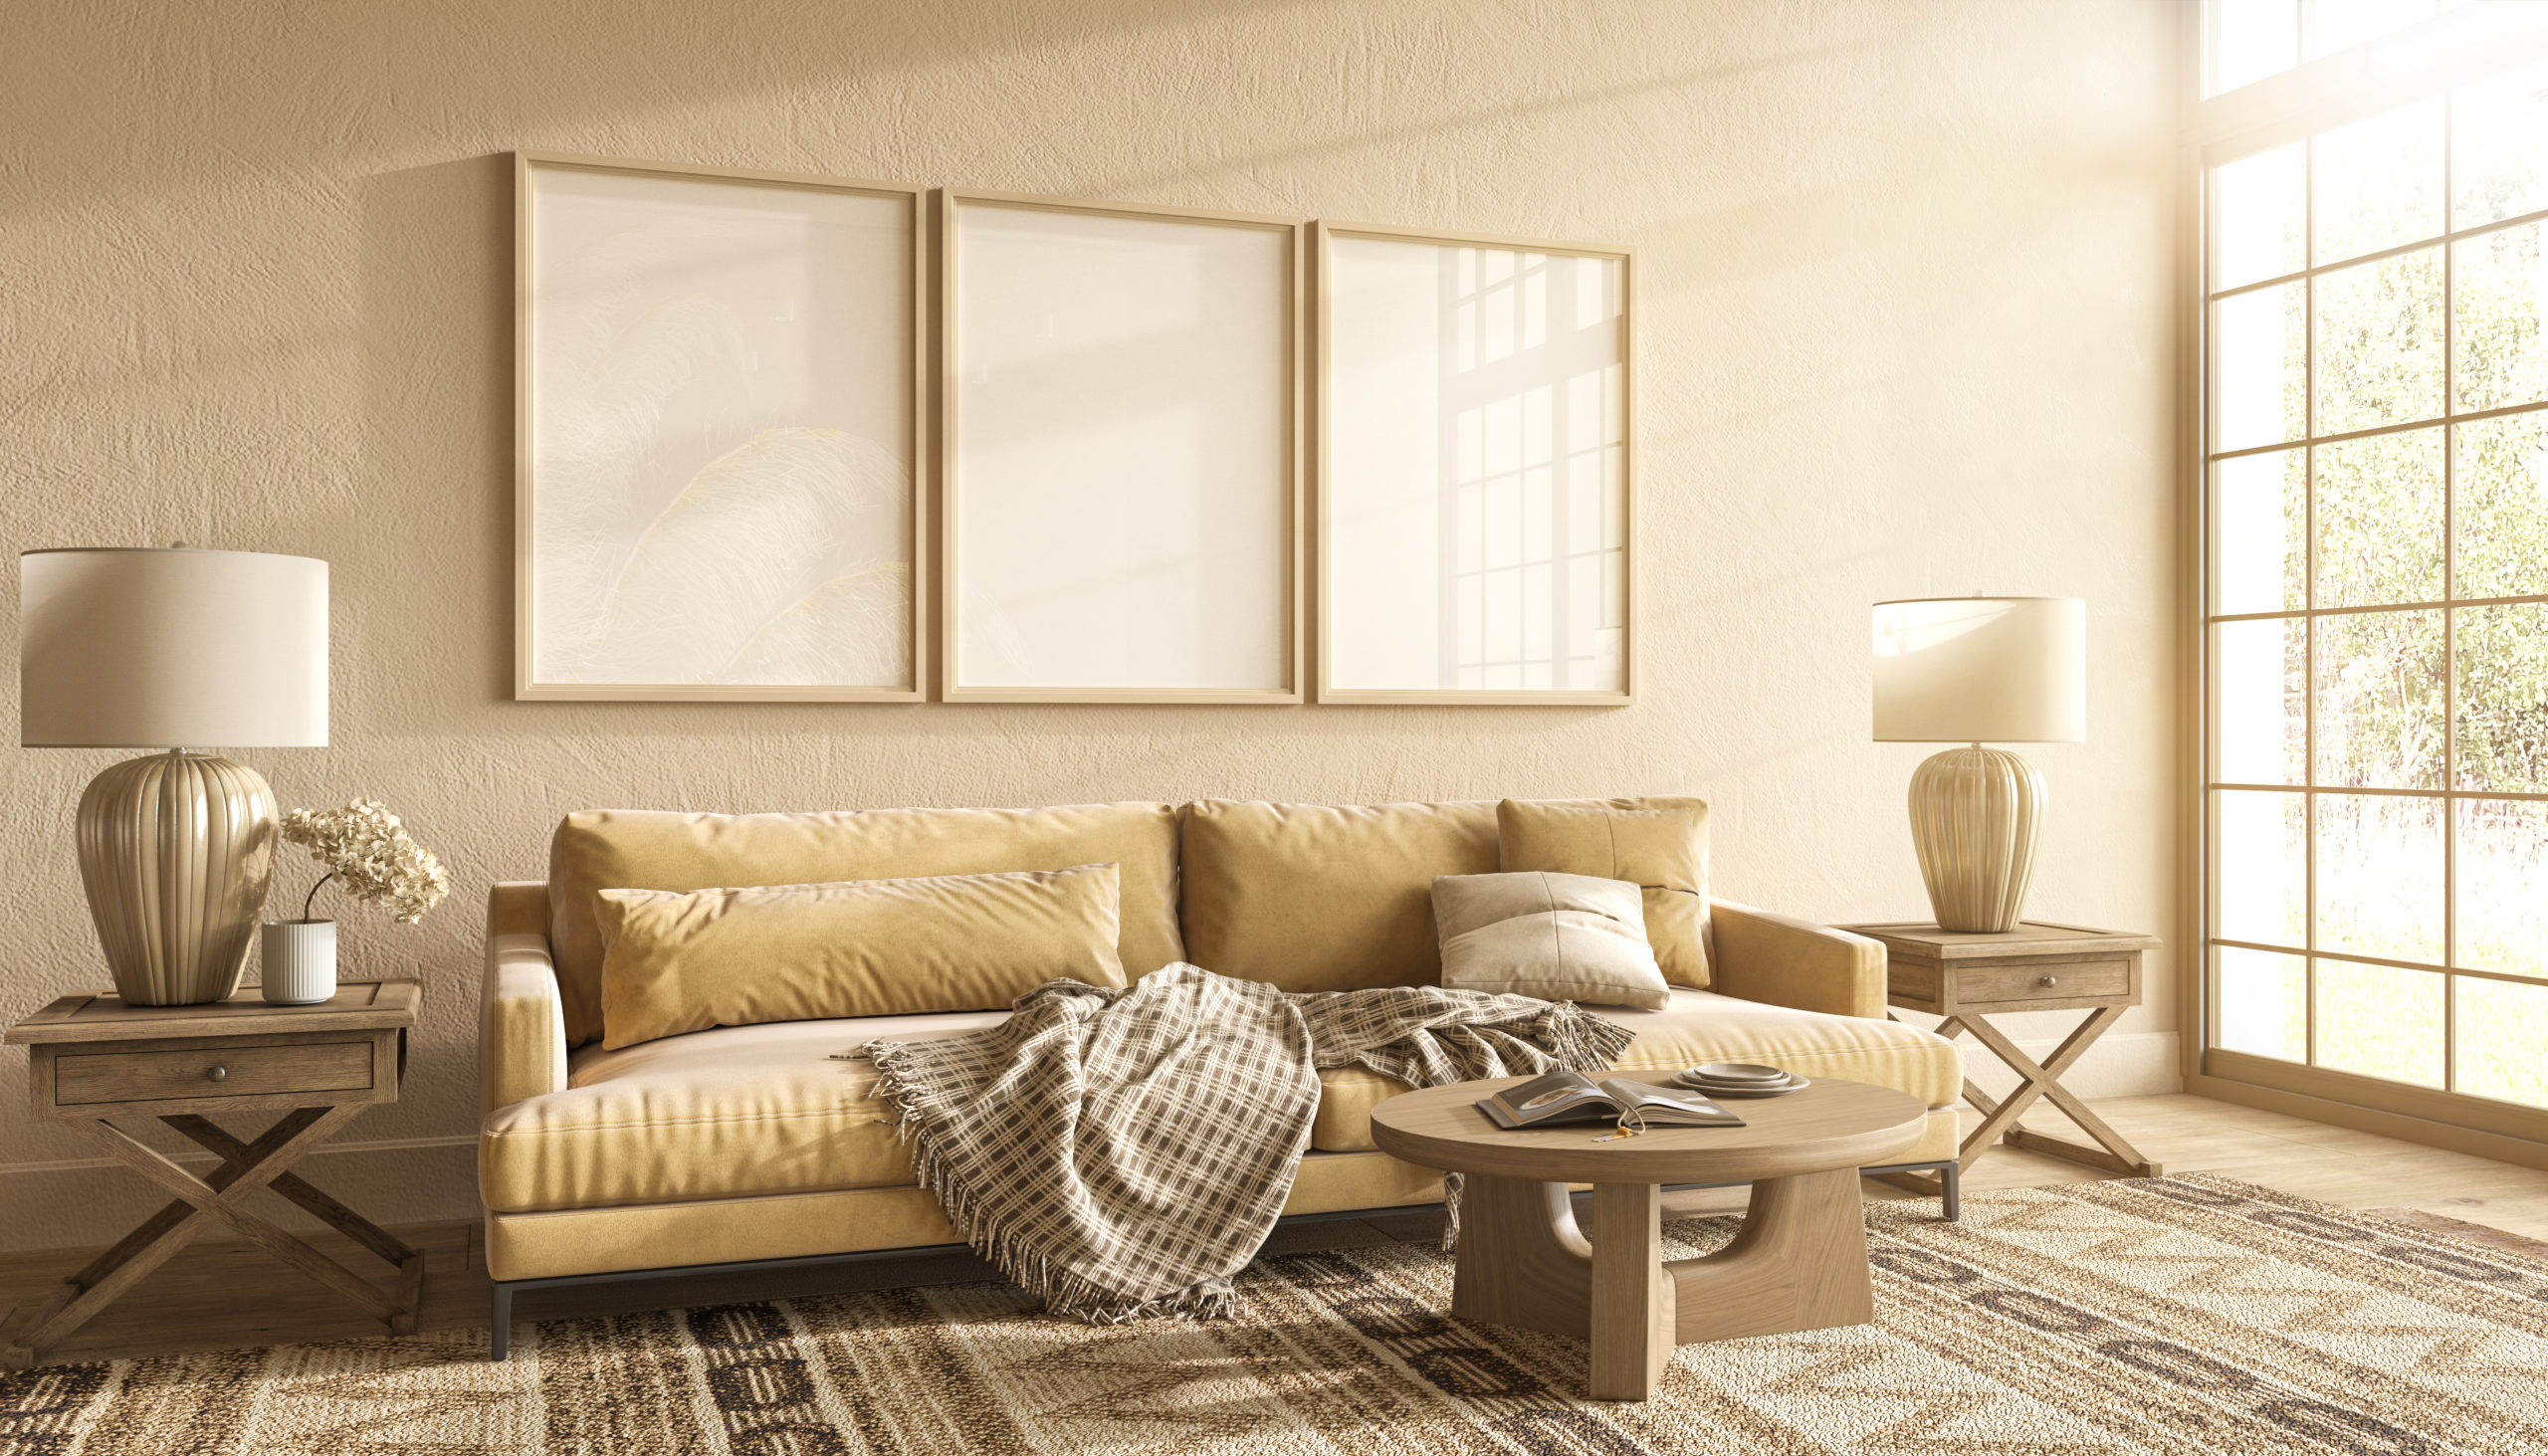 scandi-boho-interior-design-with-poster-frame-mockup-living-room-3d-render-illustration-scaled